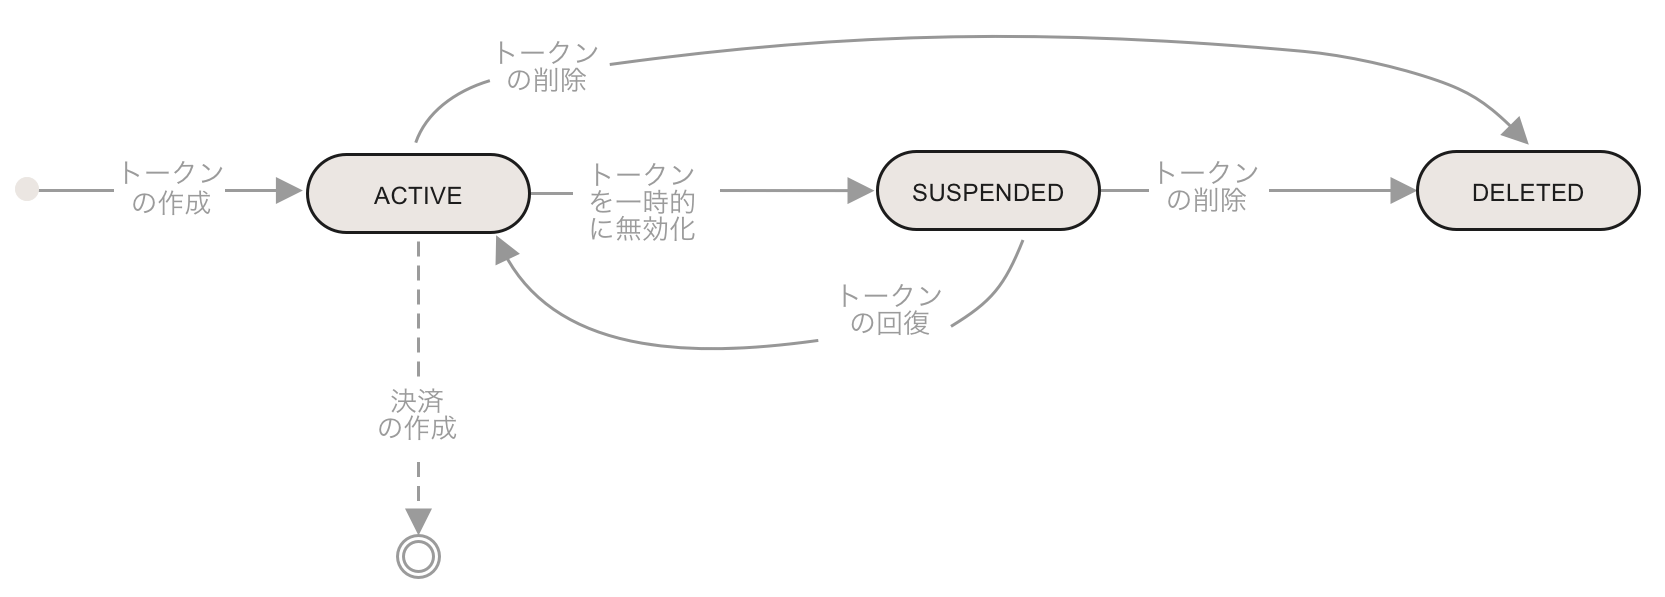 [token lifecycle diagram]